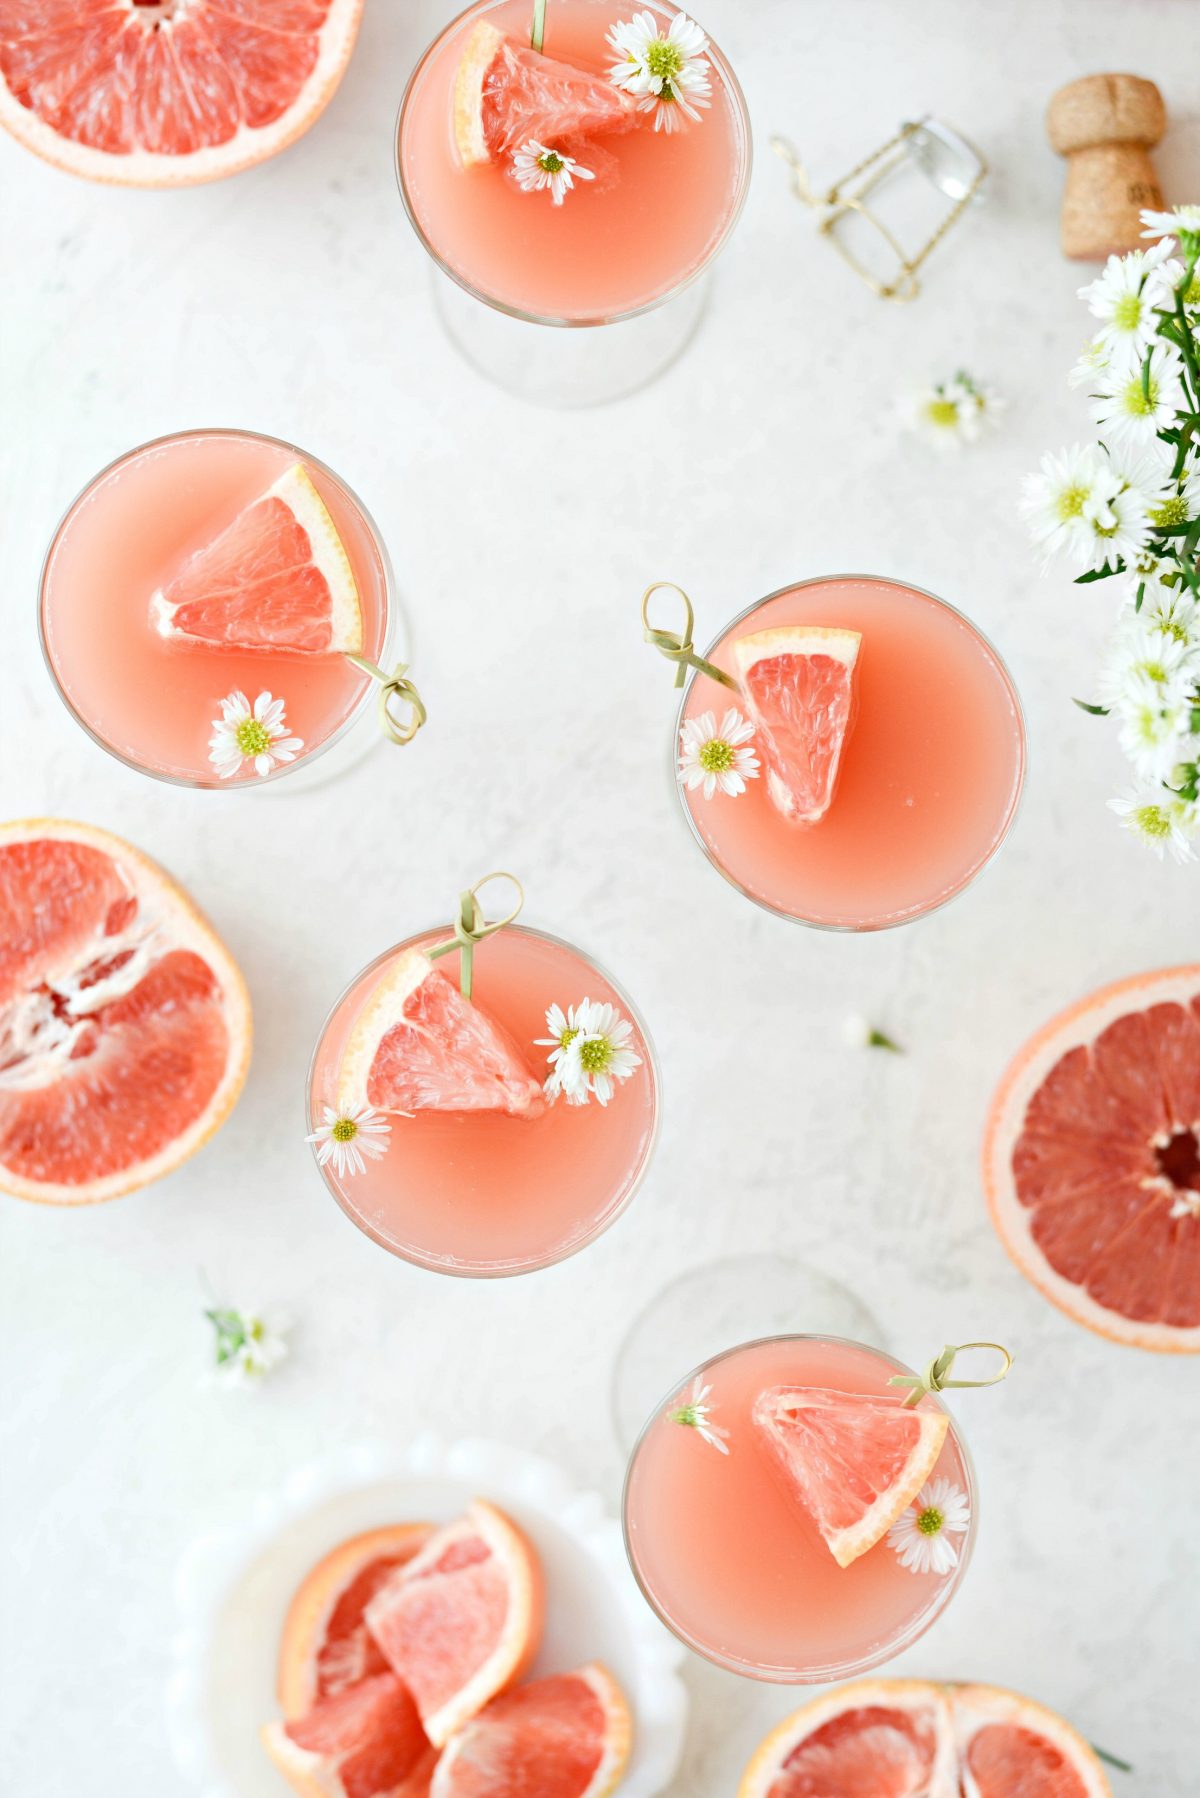 Grapefrukt Rosé Mimosas l SimplyScratch.com # voksen # drikke # grapefrukt # rose # mimosa # påske # brunch # mothersday